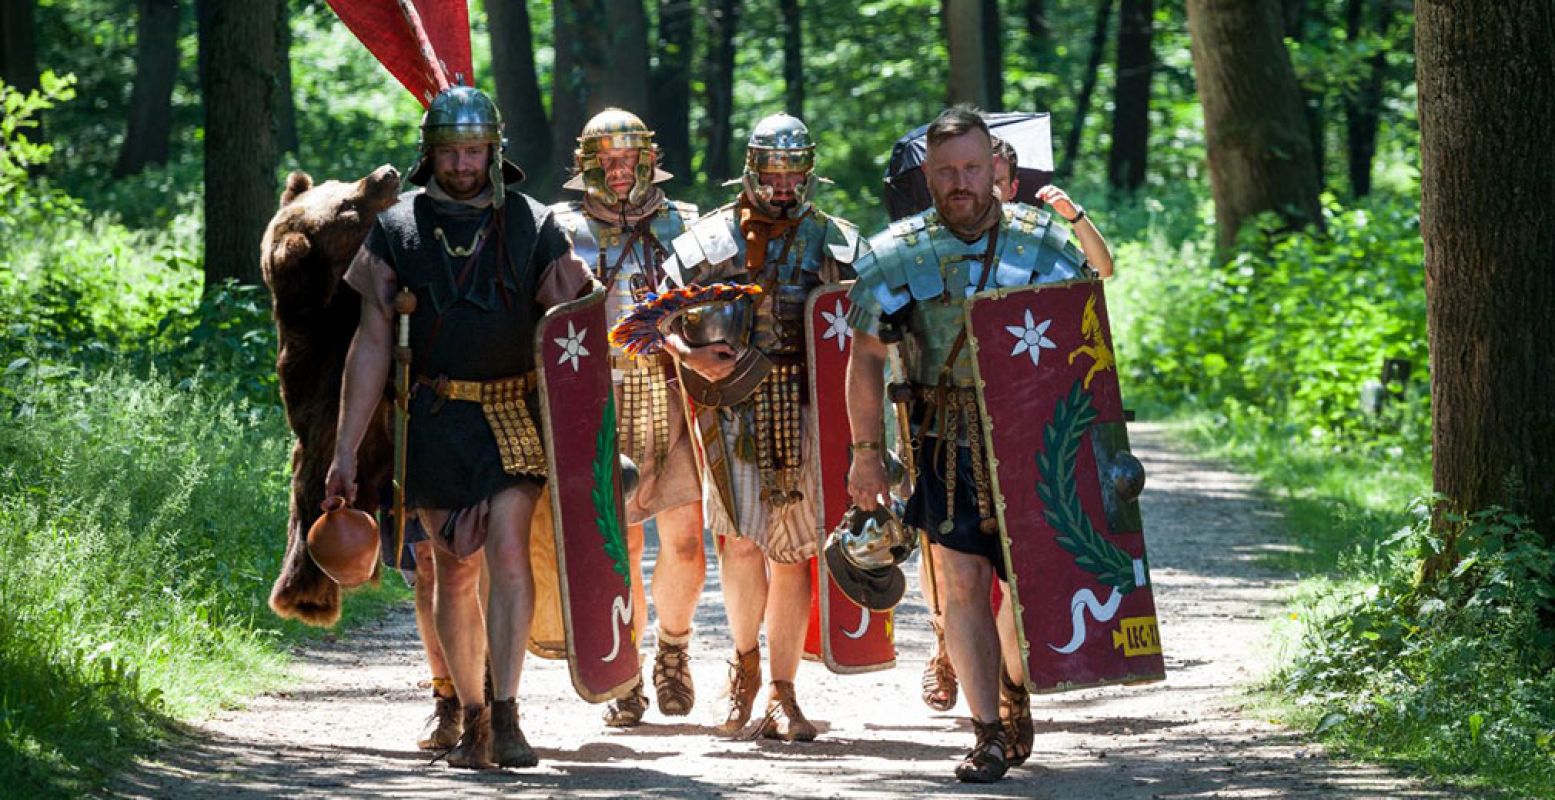 De Romeinen zaten 2000 jaar geleden niet stil! Volg hun voorbeeld en ontdek Romeins Nederland te voet of op de fiets. Foto: RomeinenNU © Jeroen Savelkouls